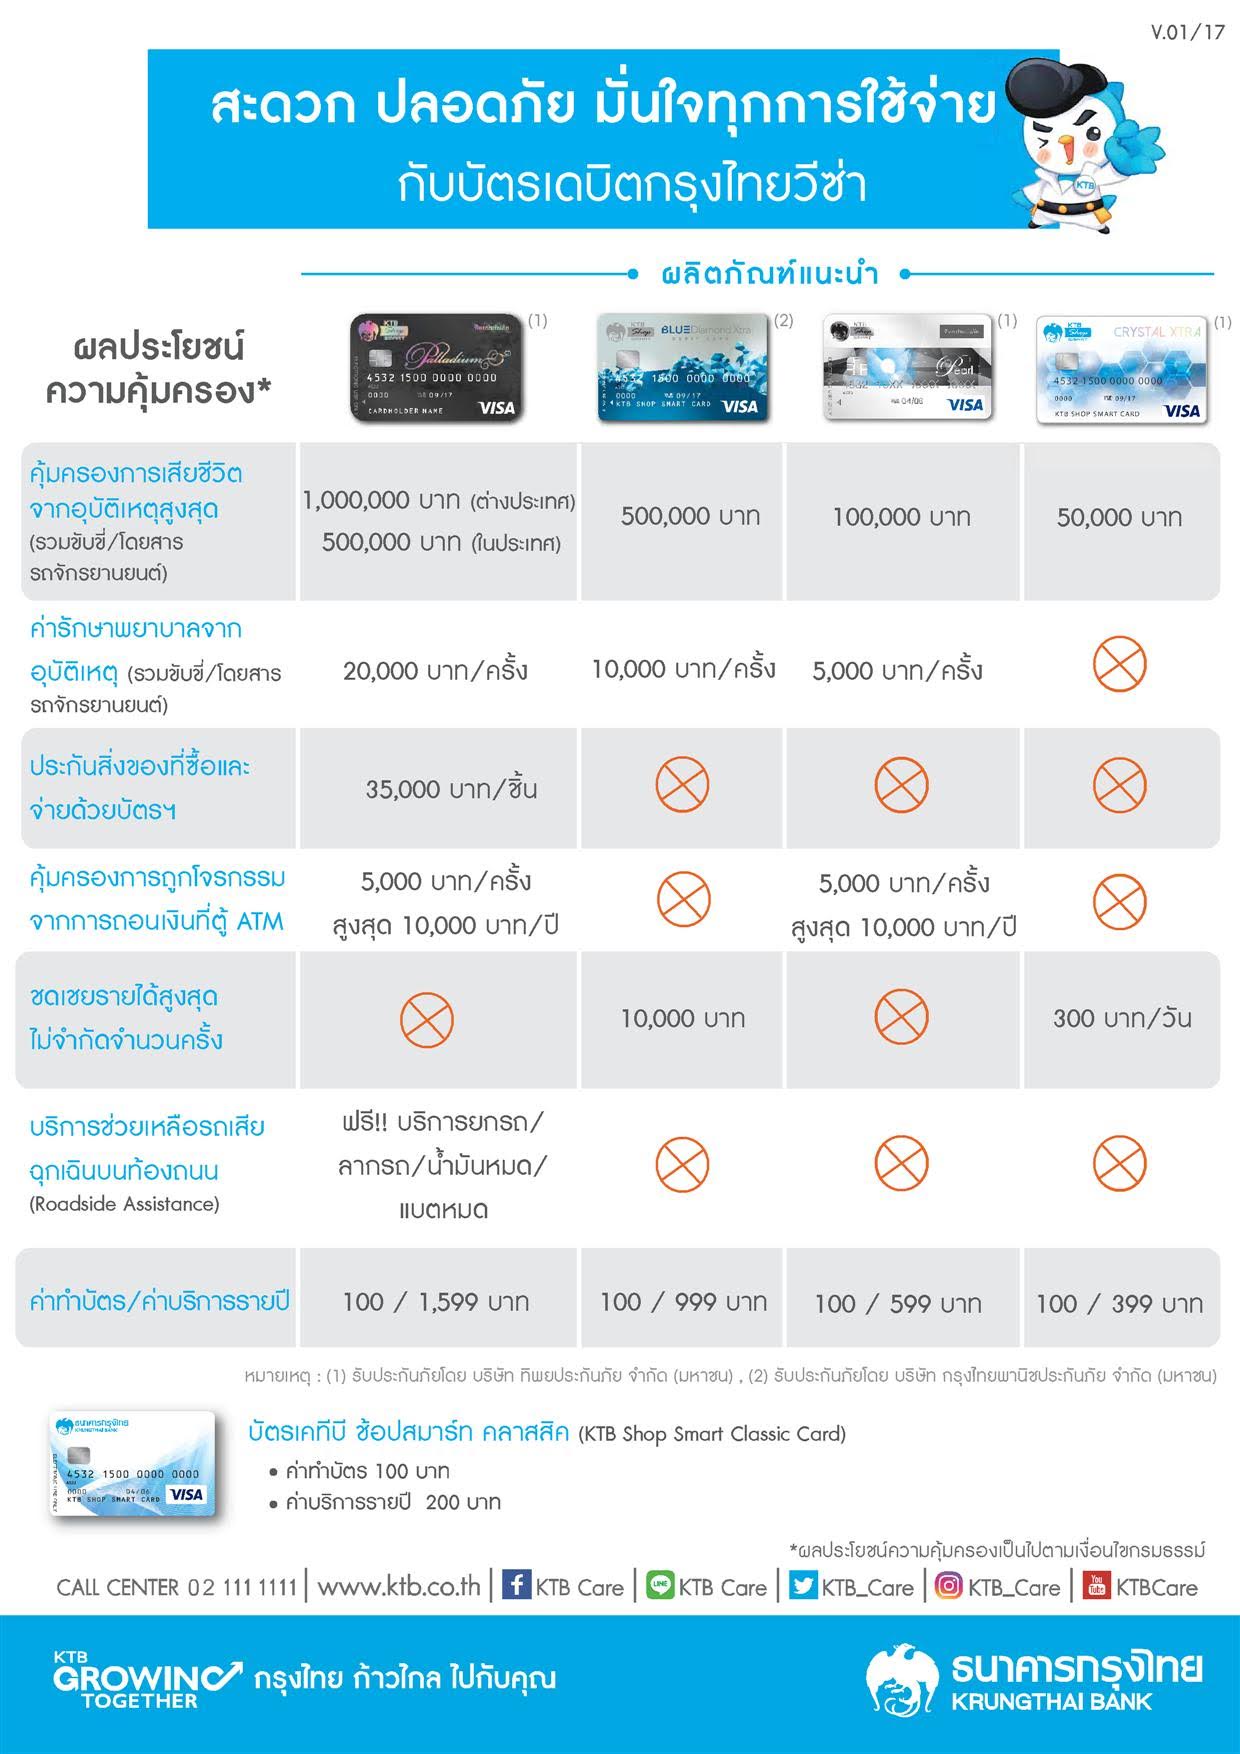 เปิดบัญชีกรุงไทยพร้อมทำบัตรAtmแบบถูกสุดราคาเท่าไหร่ครับ - Pantip